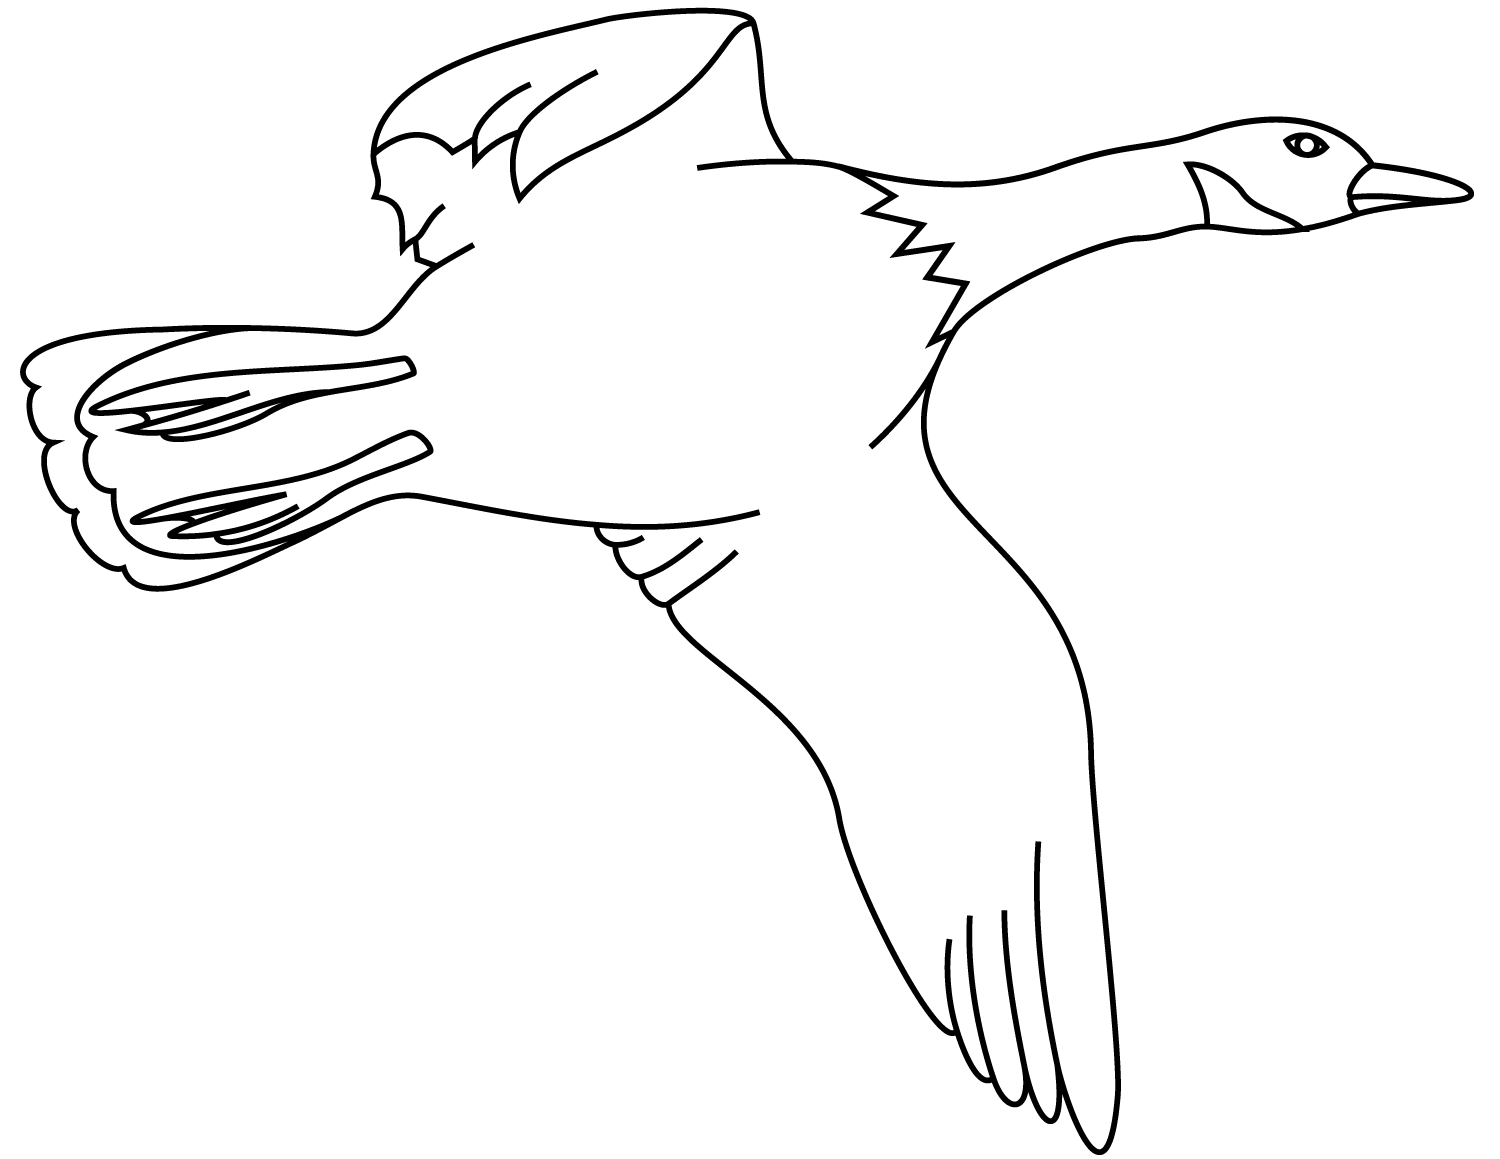 飞鸭需要大翅膀才能从鸭子身上快速起飞